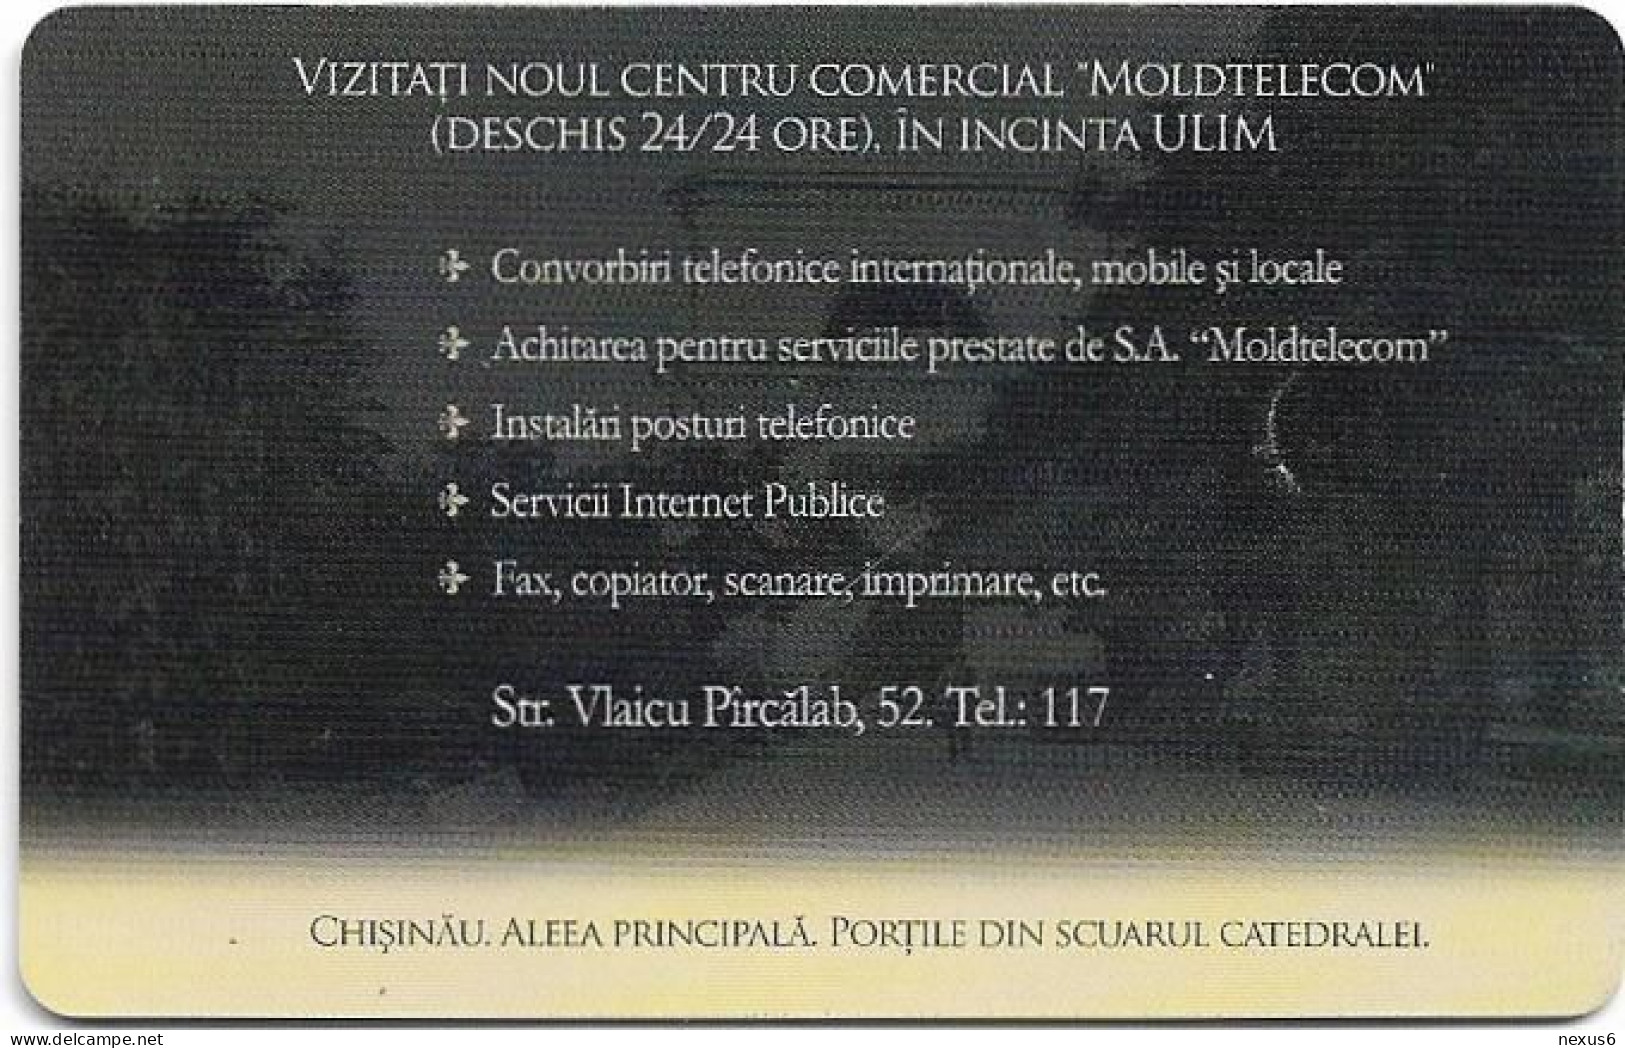 Moldova - Moldtelecom - Chisinau, Aleea Principala, Chip CHT08, 09.2005, 100U, 15.603ex, Used - Moldawien (Moldau)